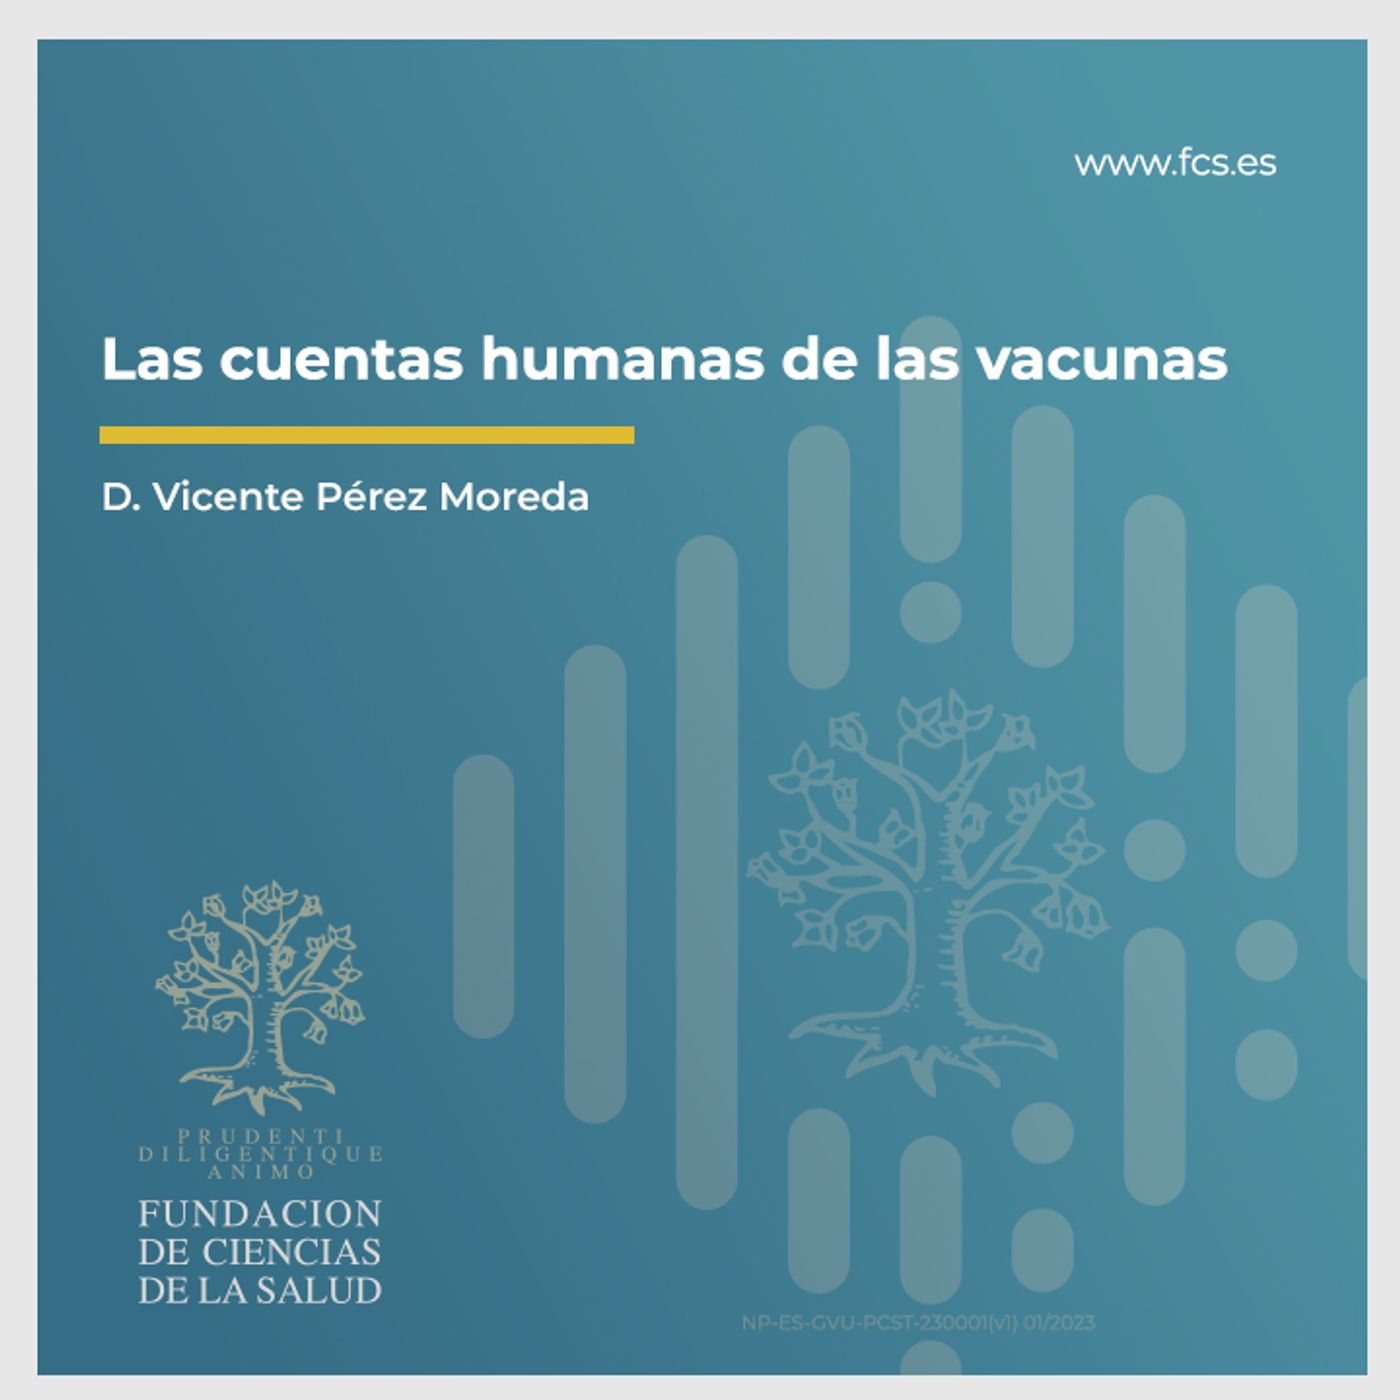 Sesión XIV: "Las cuentas humanas de las vacunas" con  D. Vicente Pérez Moreda